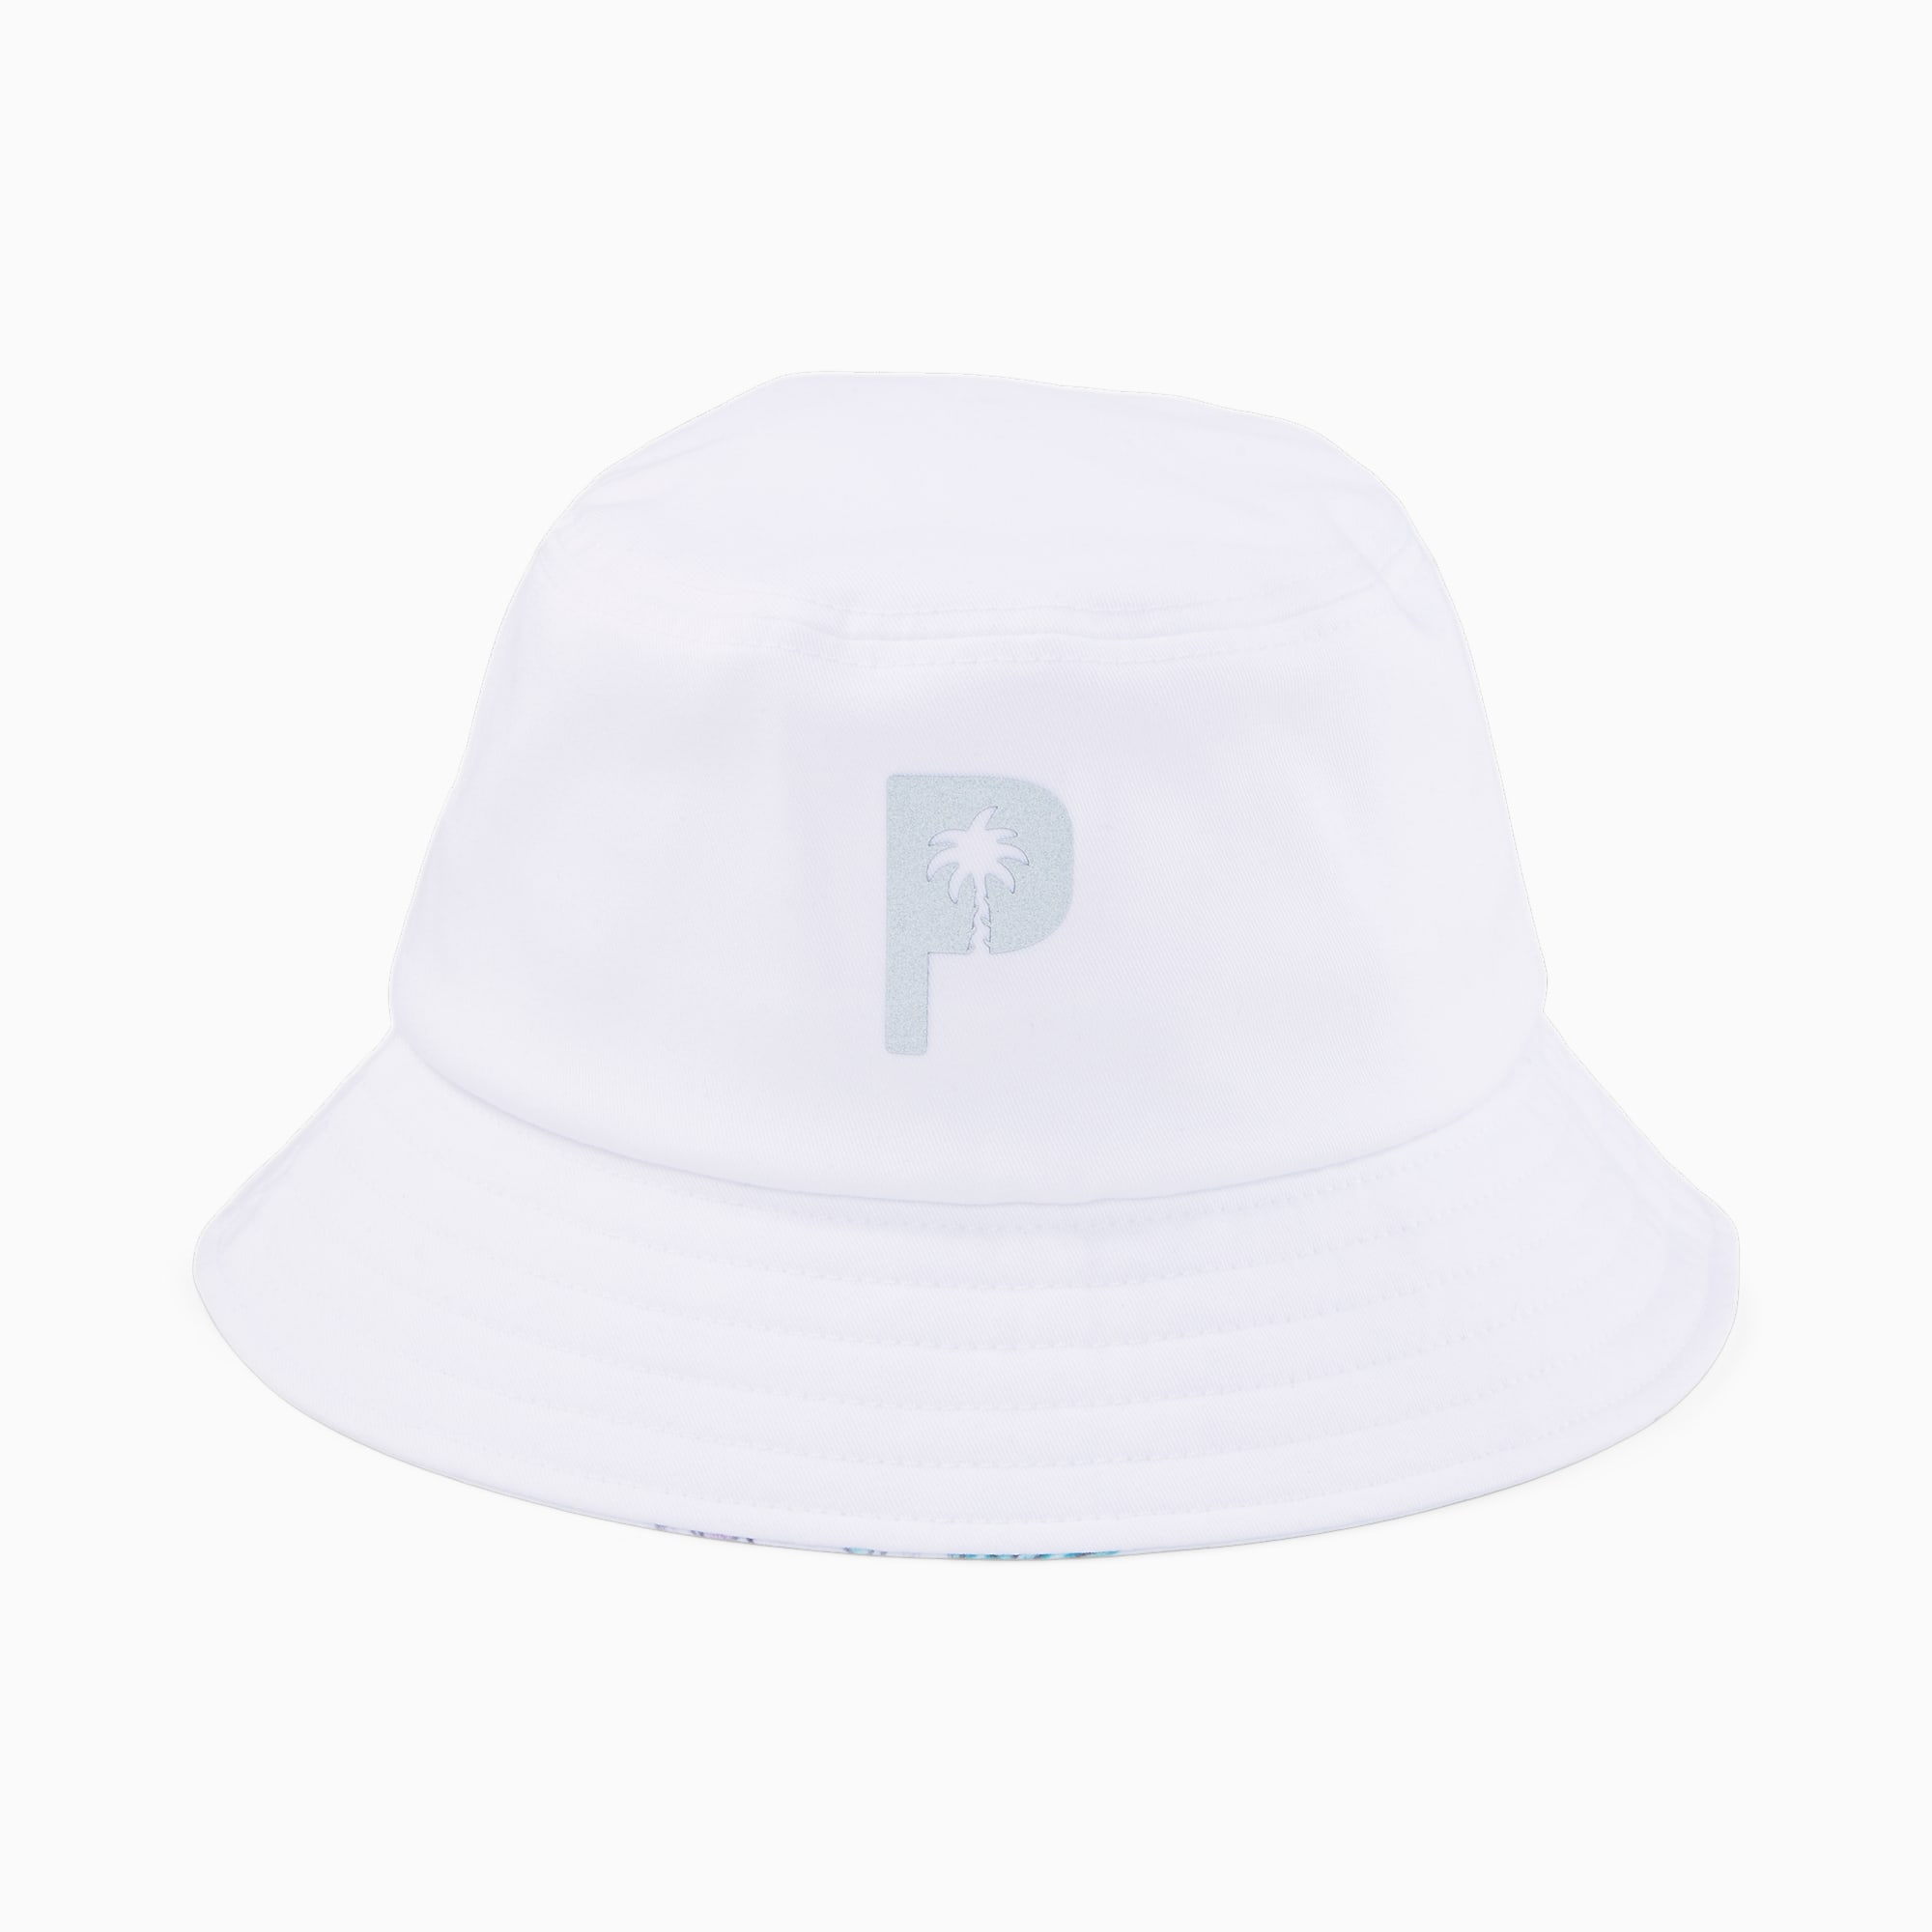 PUMA X Palm Tree Crew Golf Bucket Hat Für Herren, Weiß, Größe: L/XL, Accessoires